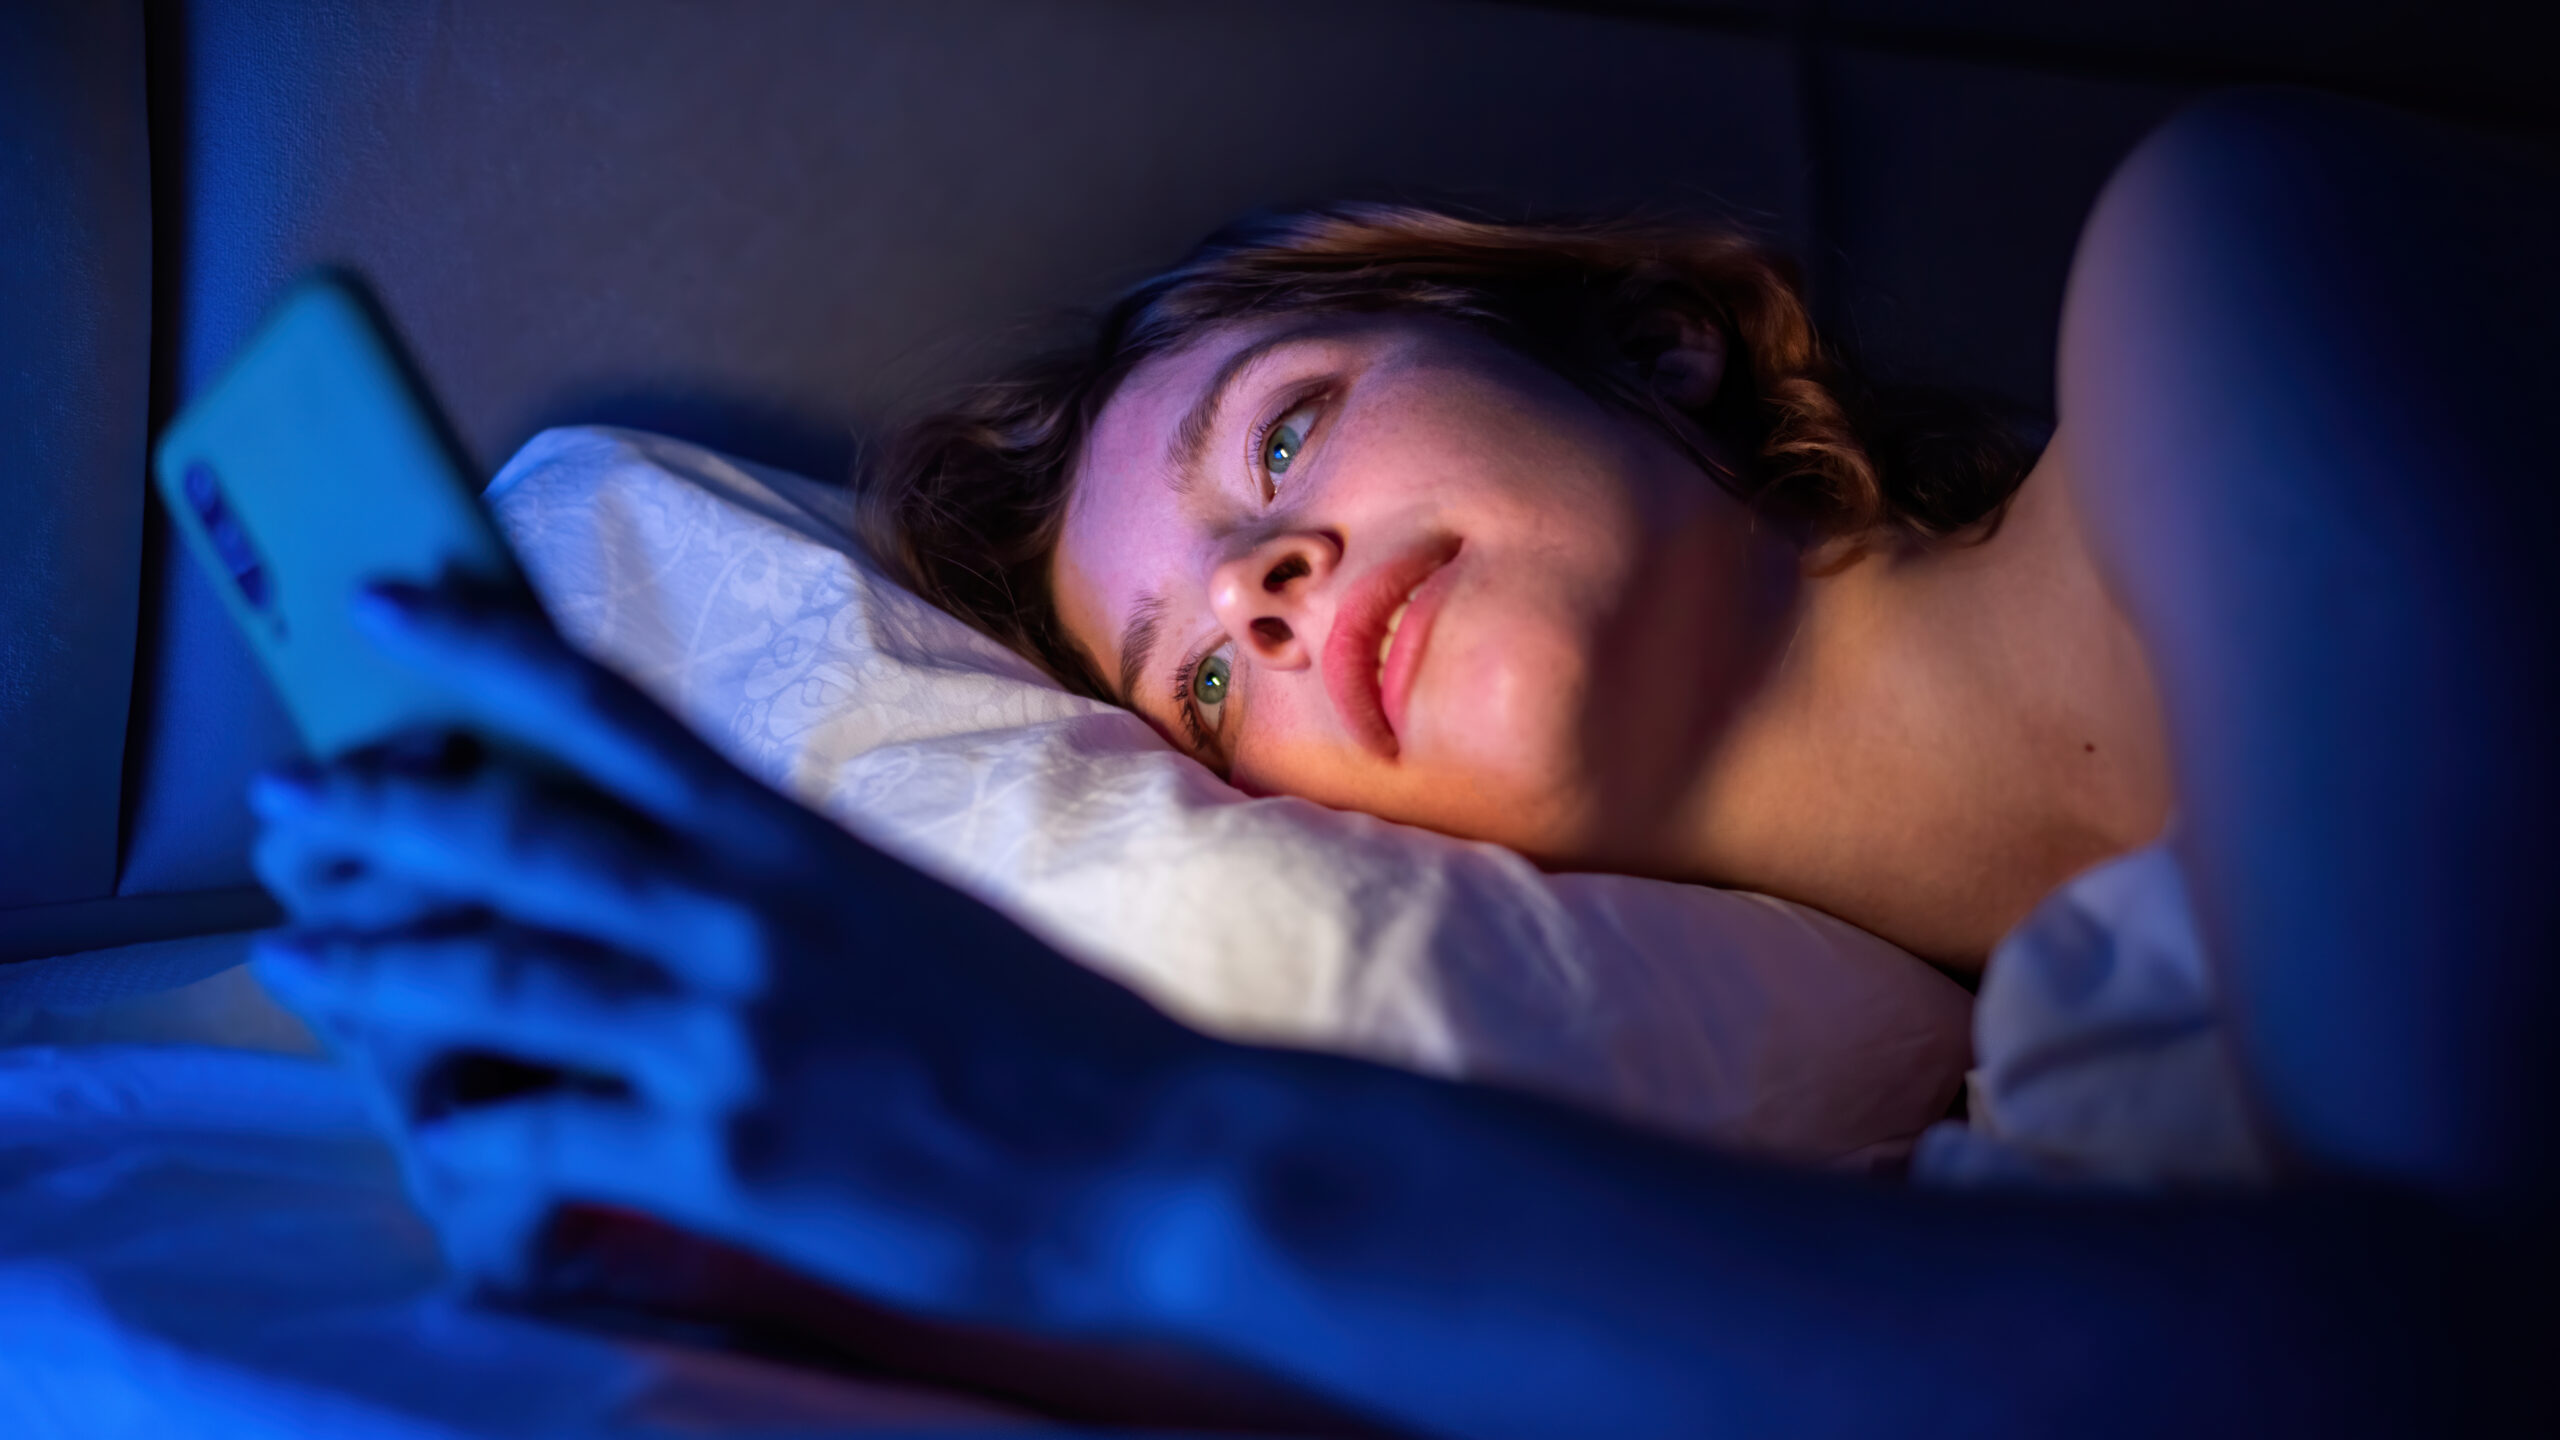 Comment les objets connectés influencent-ils nos habitudes de sommeil ?